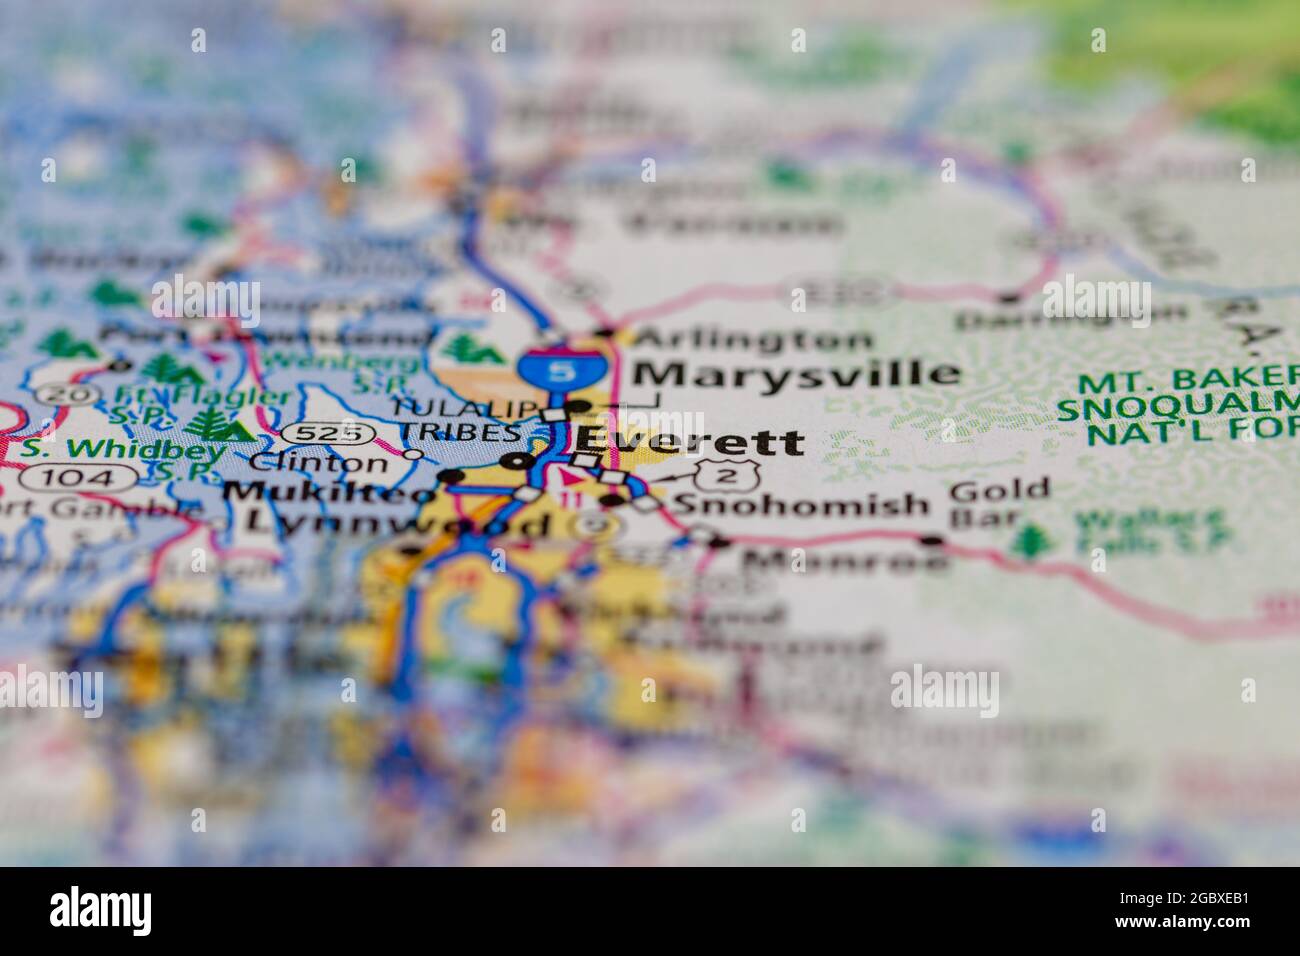 Everett Washington state USA mostrato su una mappa stradale o su una mappa geografica Foto Stock